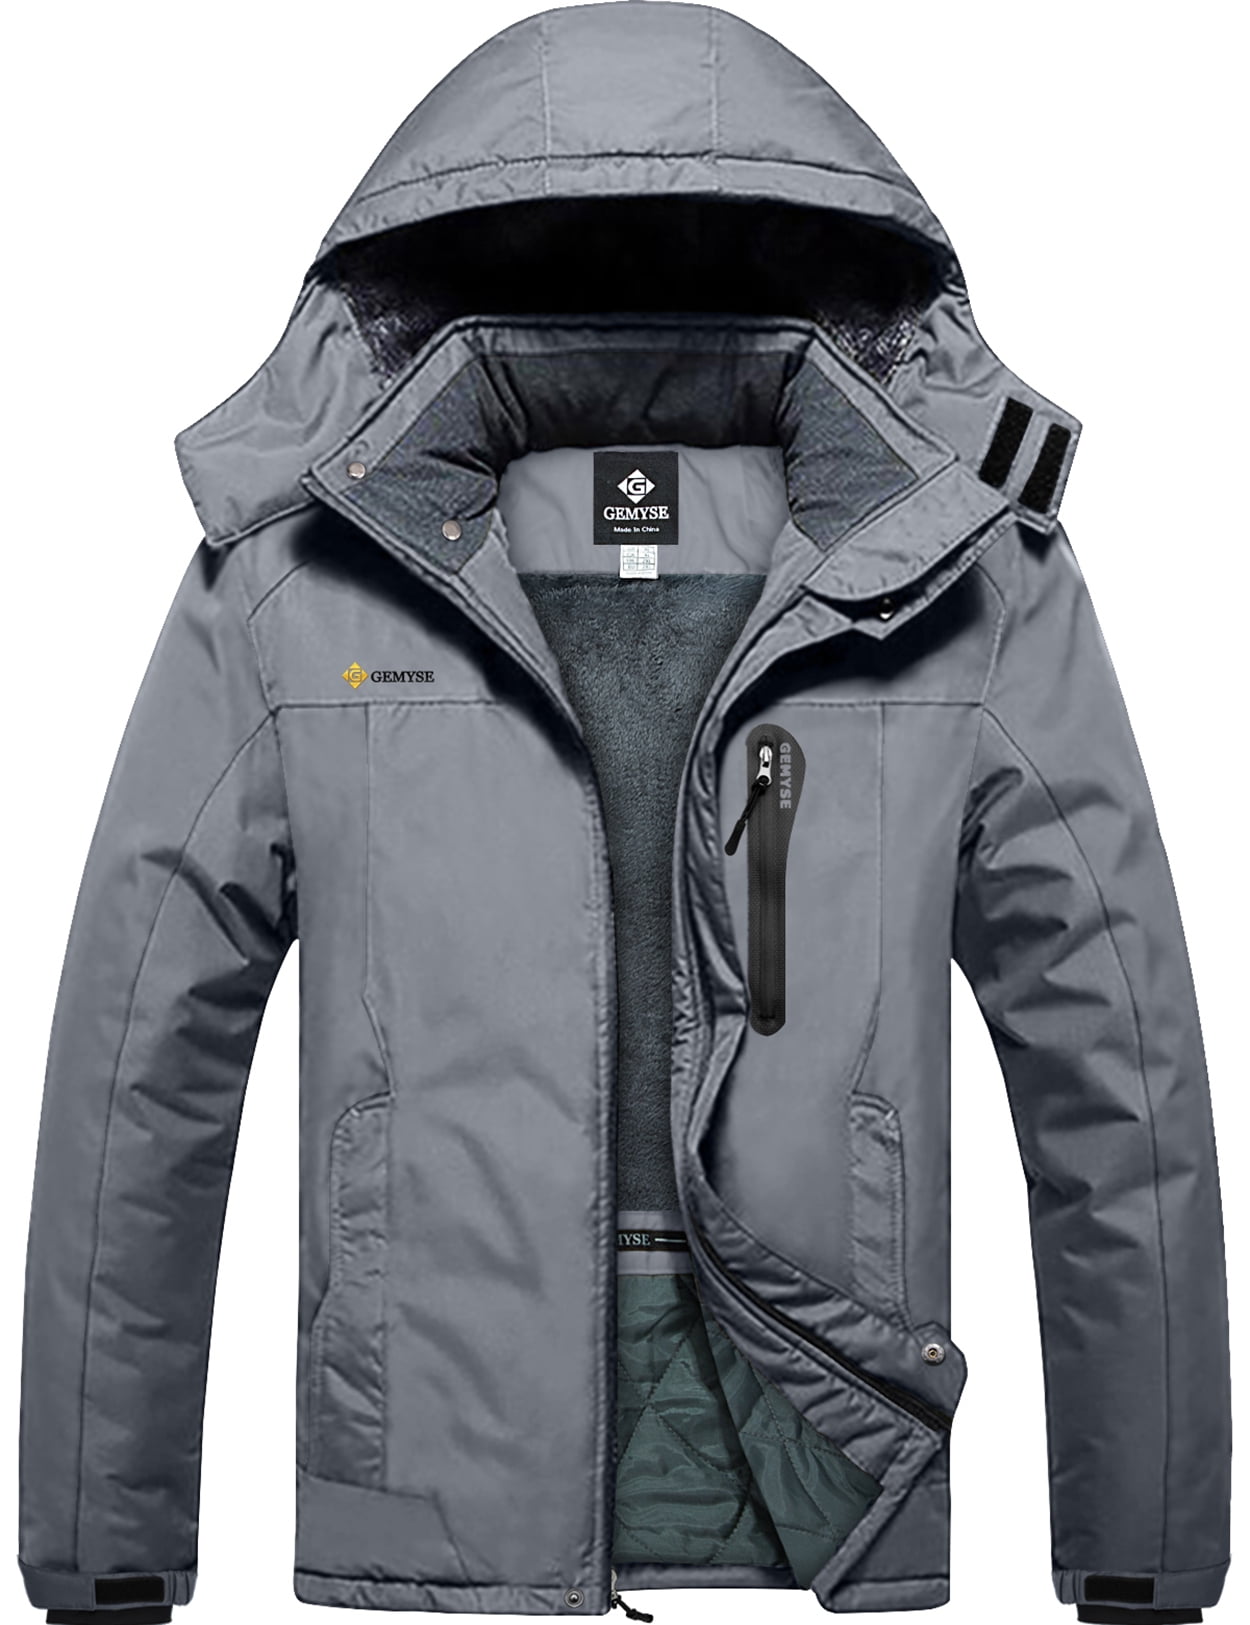 GEMYSE Men's Waterproof Ski Snow Jacket Insulated Winter Windproof Fleece Jacket with Hood 